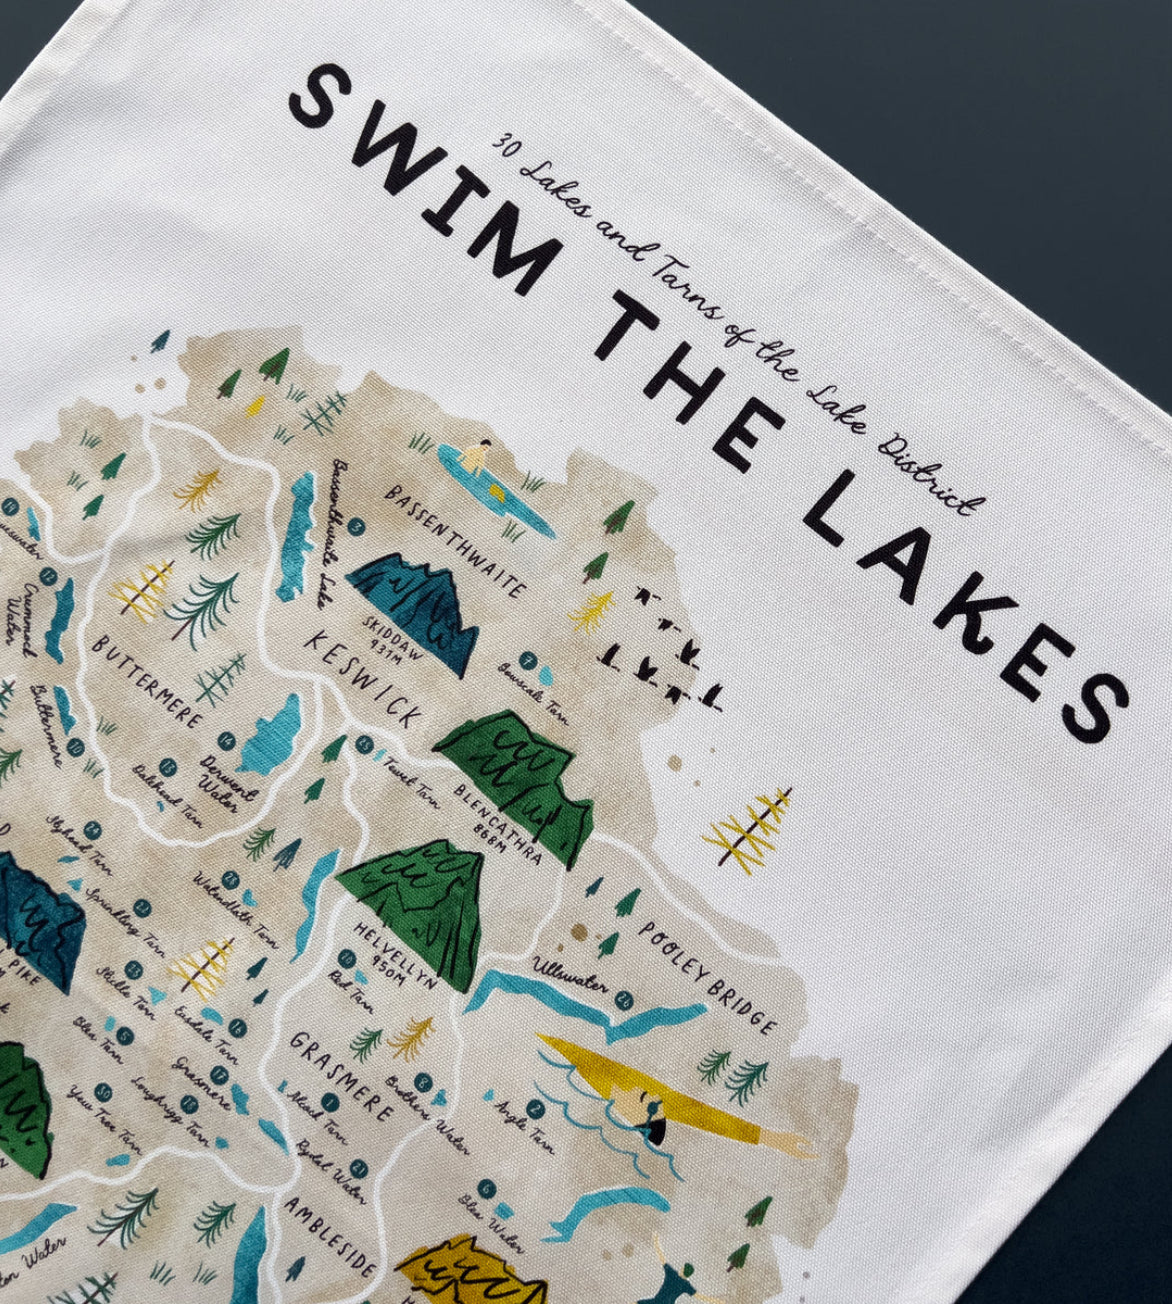 Swim The Lakes Tea Towel